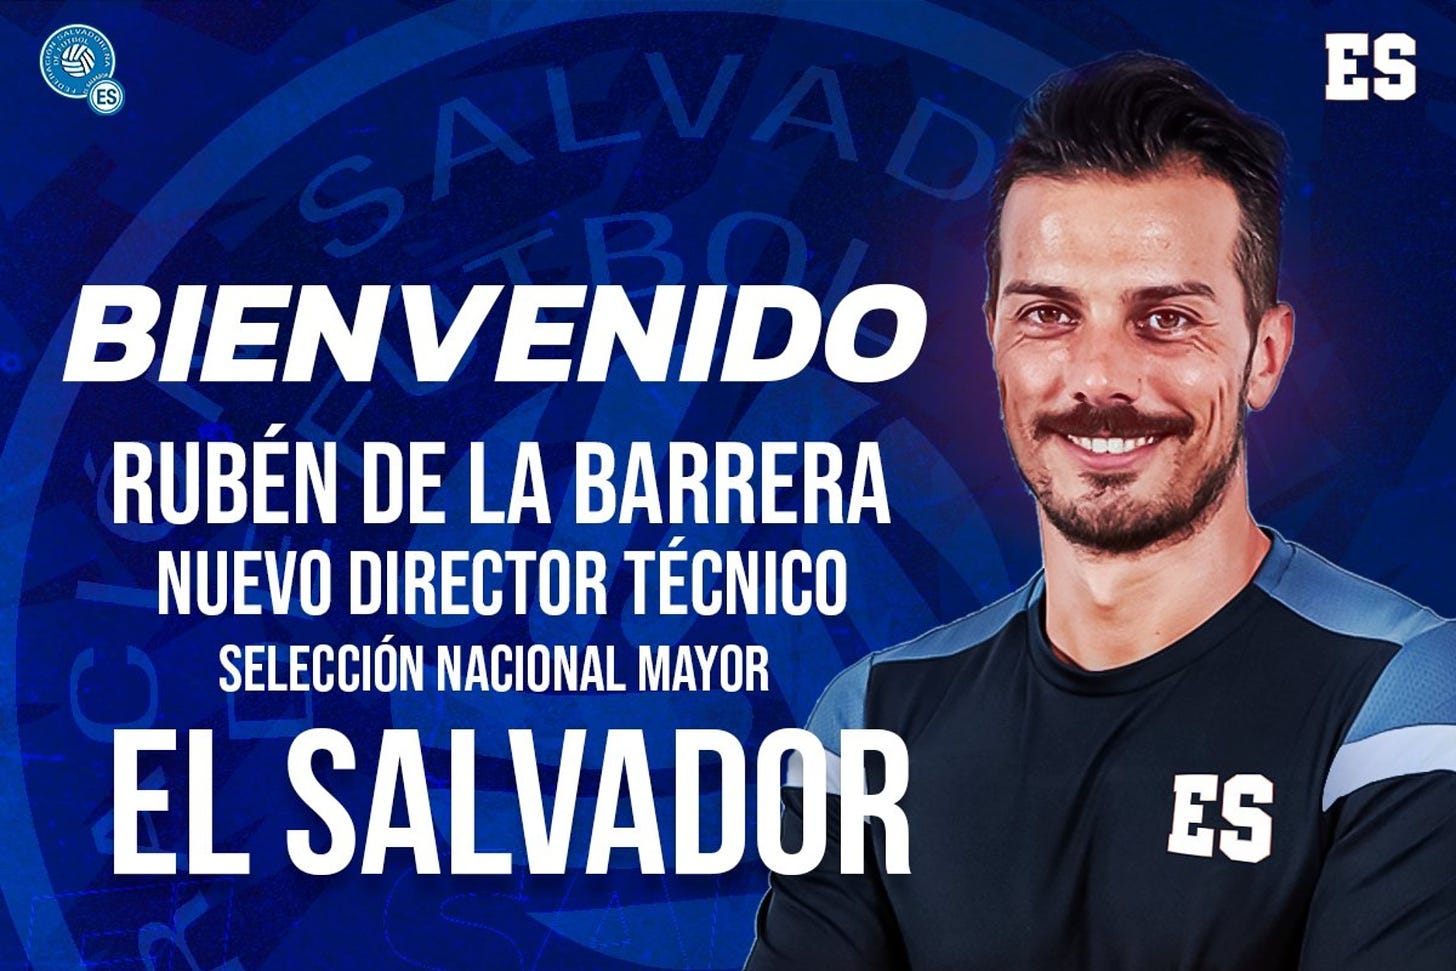 Rubén de la Barrera, el 'salvador' de El Salvador: "Estamos emocionados" |  Marca